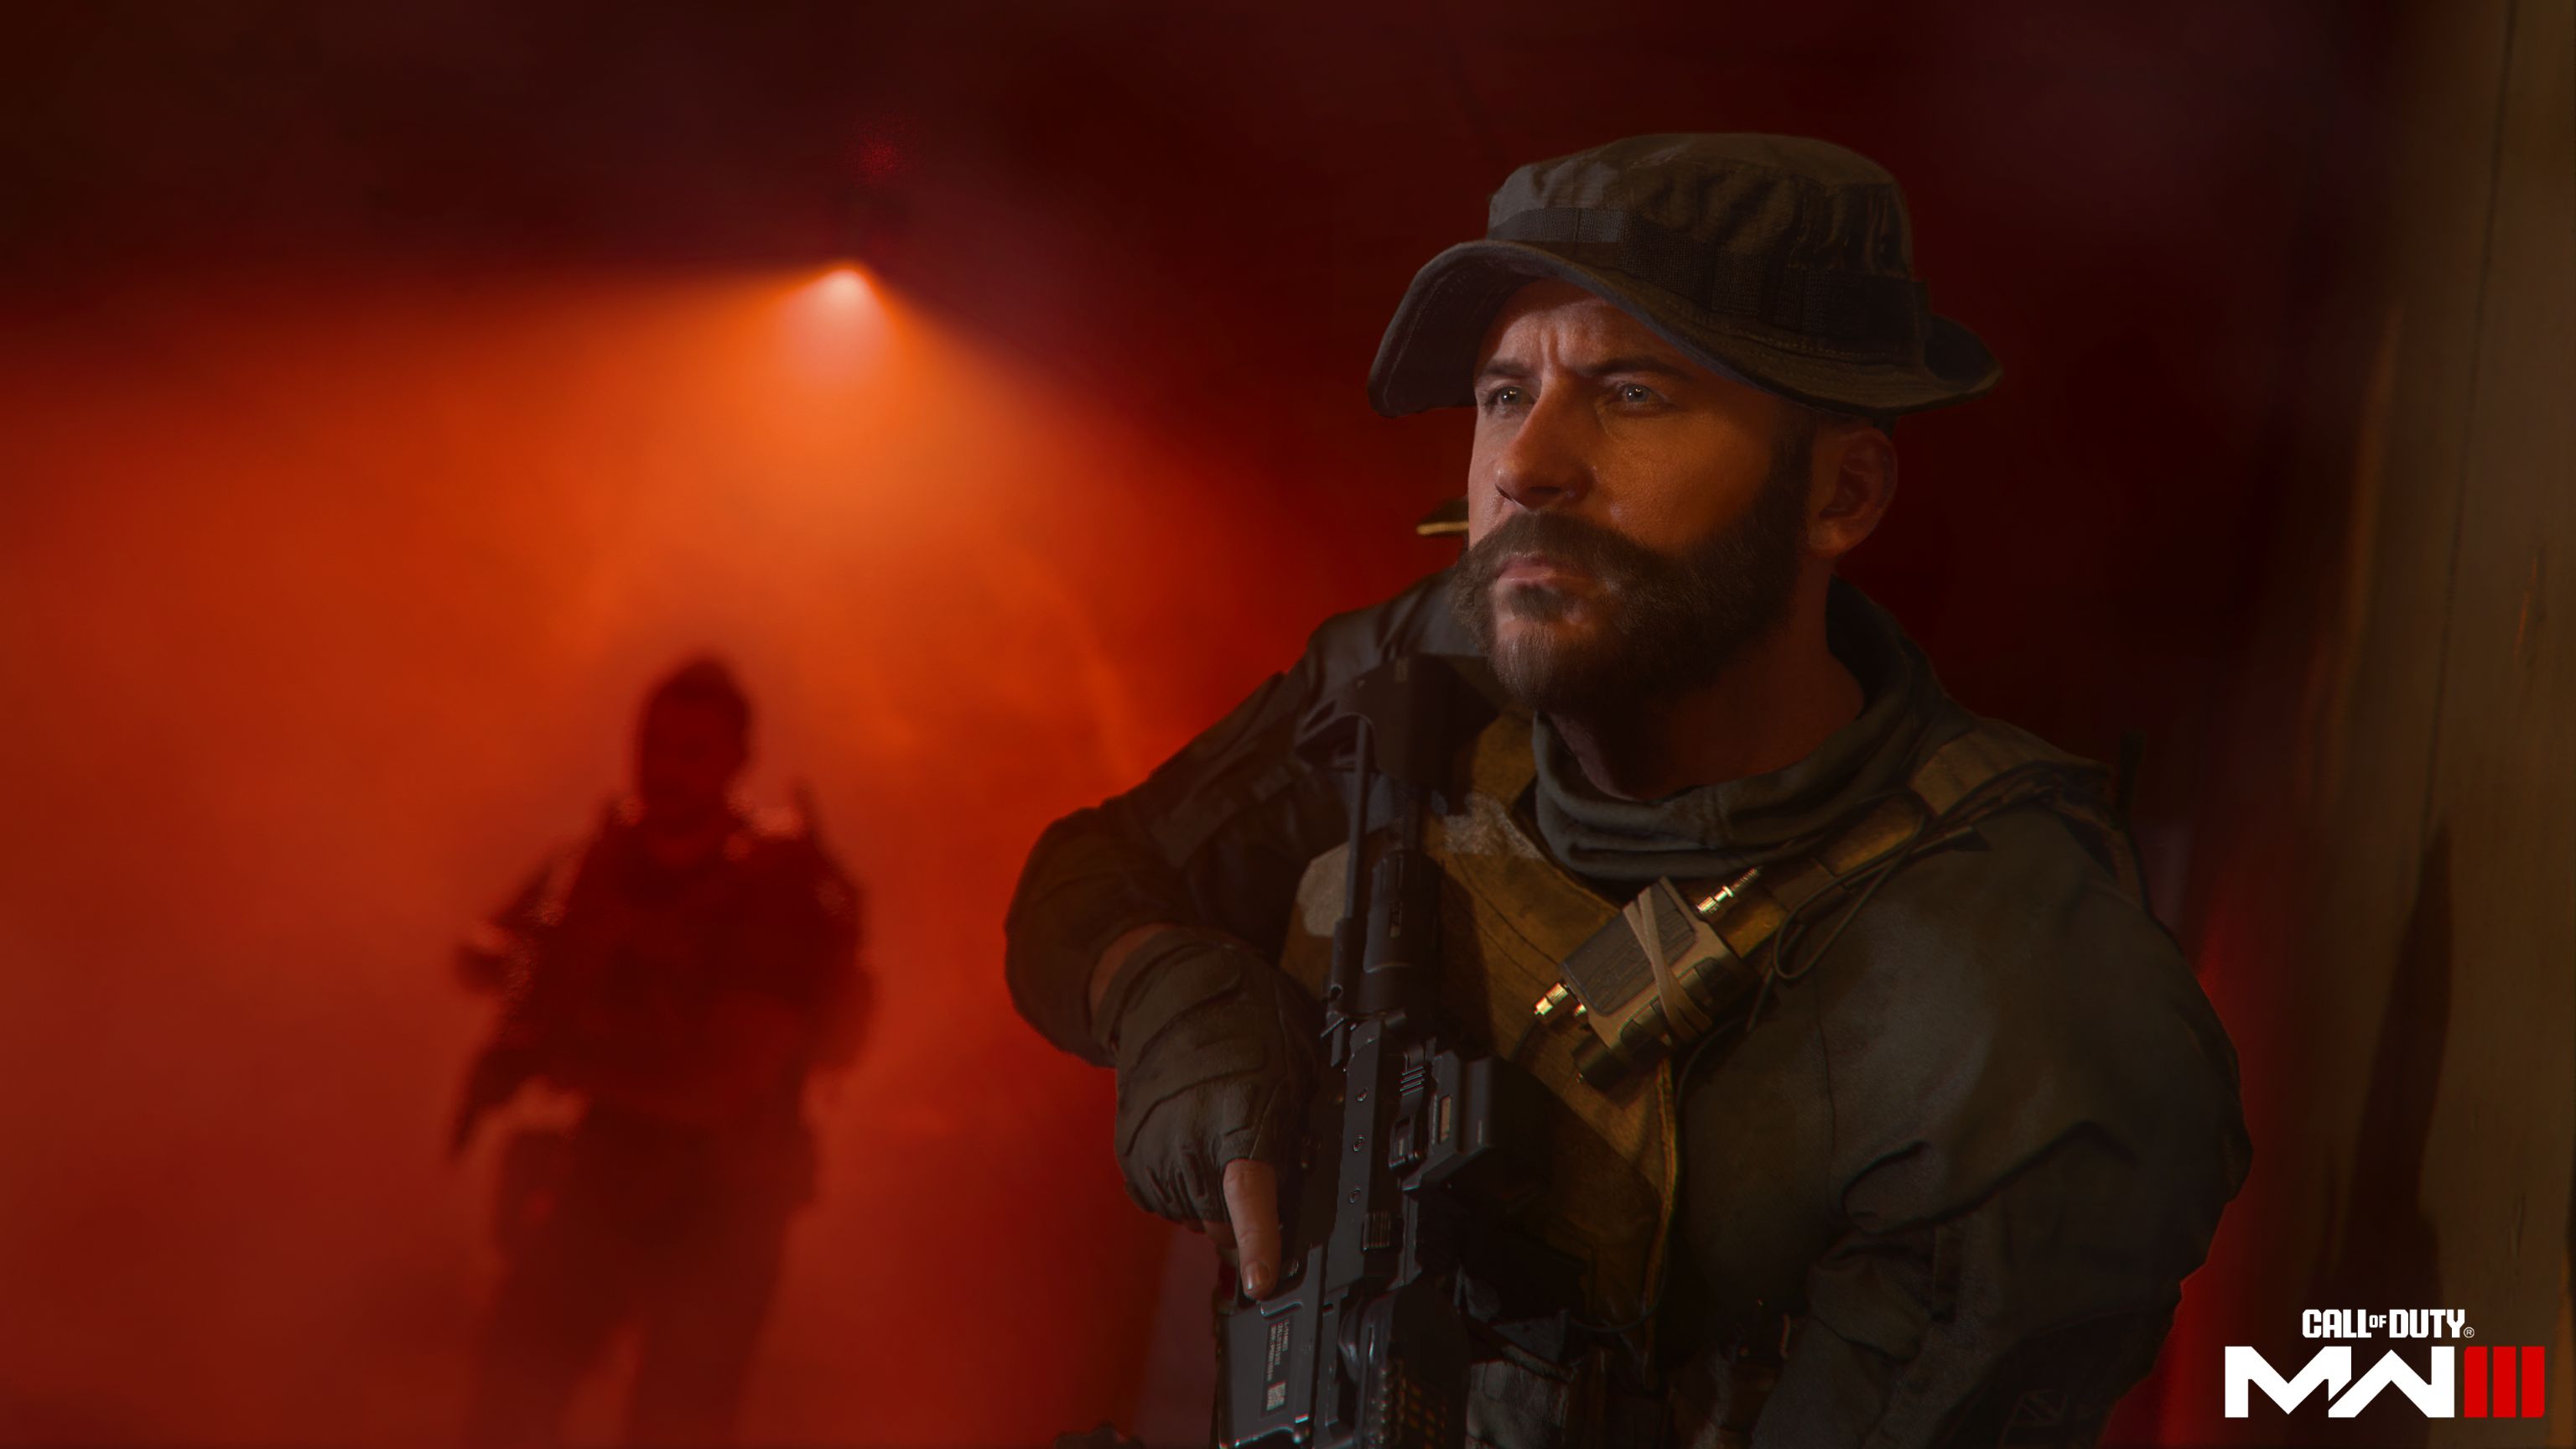 PS4 Call of Duty: Modern Warfare III [Cross-Gen Edition]